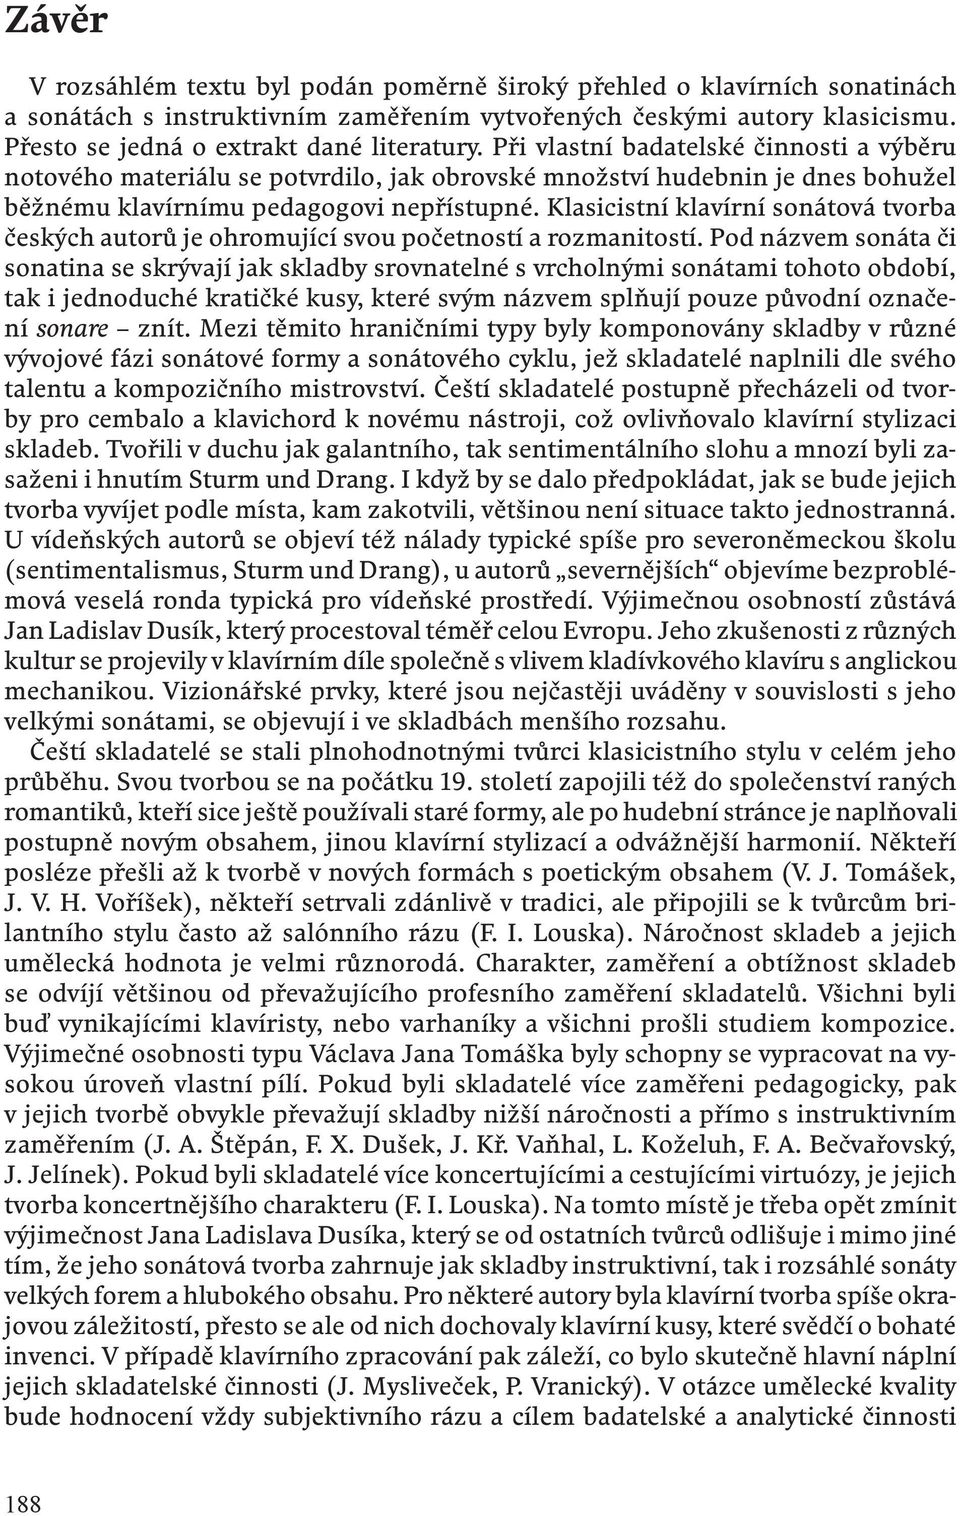 ČESKÁ KLAVÍRNÍ SONATINA V OBDOBÍ KLASICISMU. Lenka Hejnová - PDF Free  Download